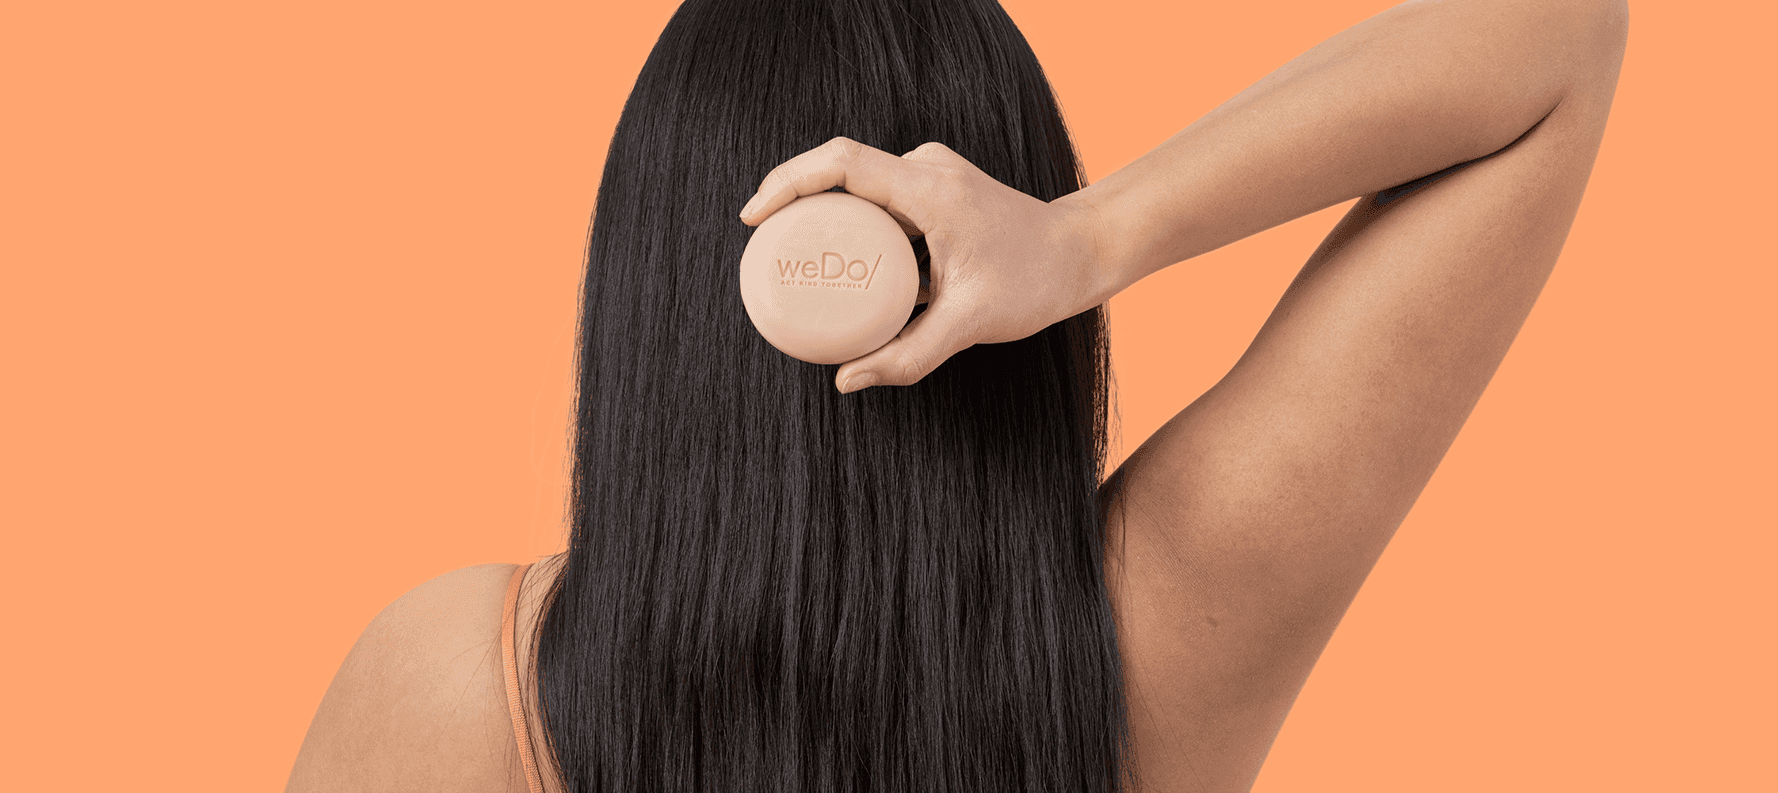 Hinterkopf einer Frau mit langen schwarzen Haaren, die das No Plastic Shampoo Bar von weDo/ hält